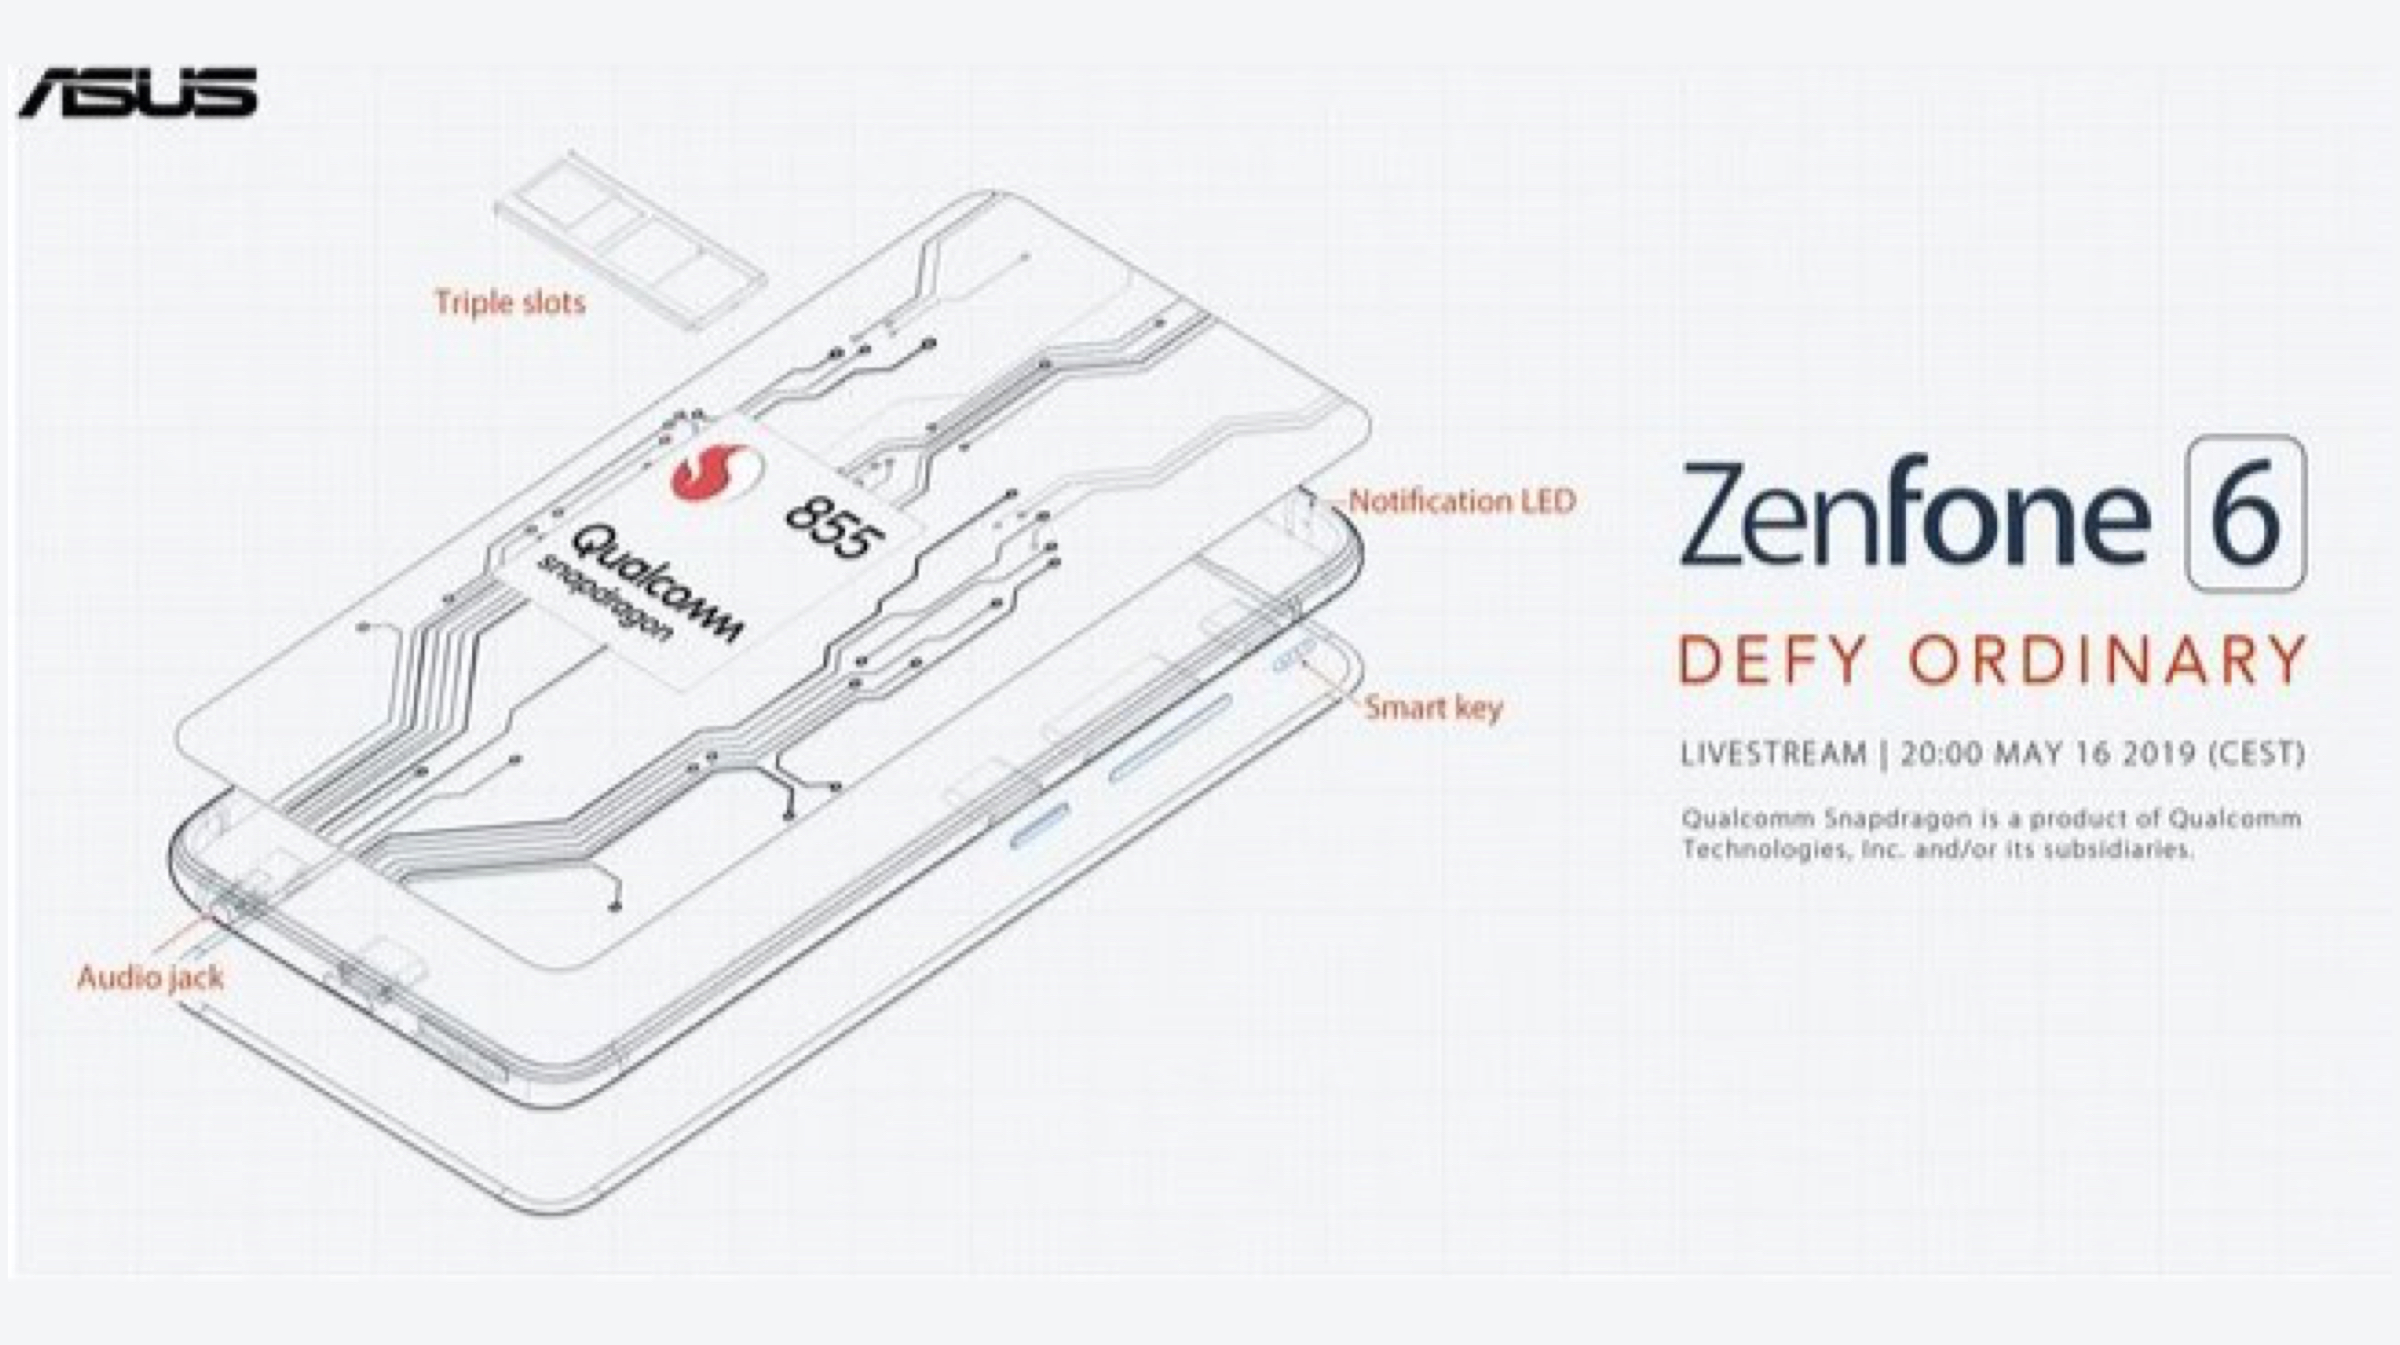 Asus ZenFone 6 key features